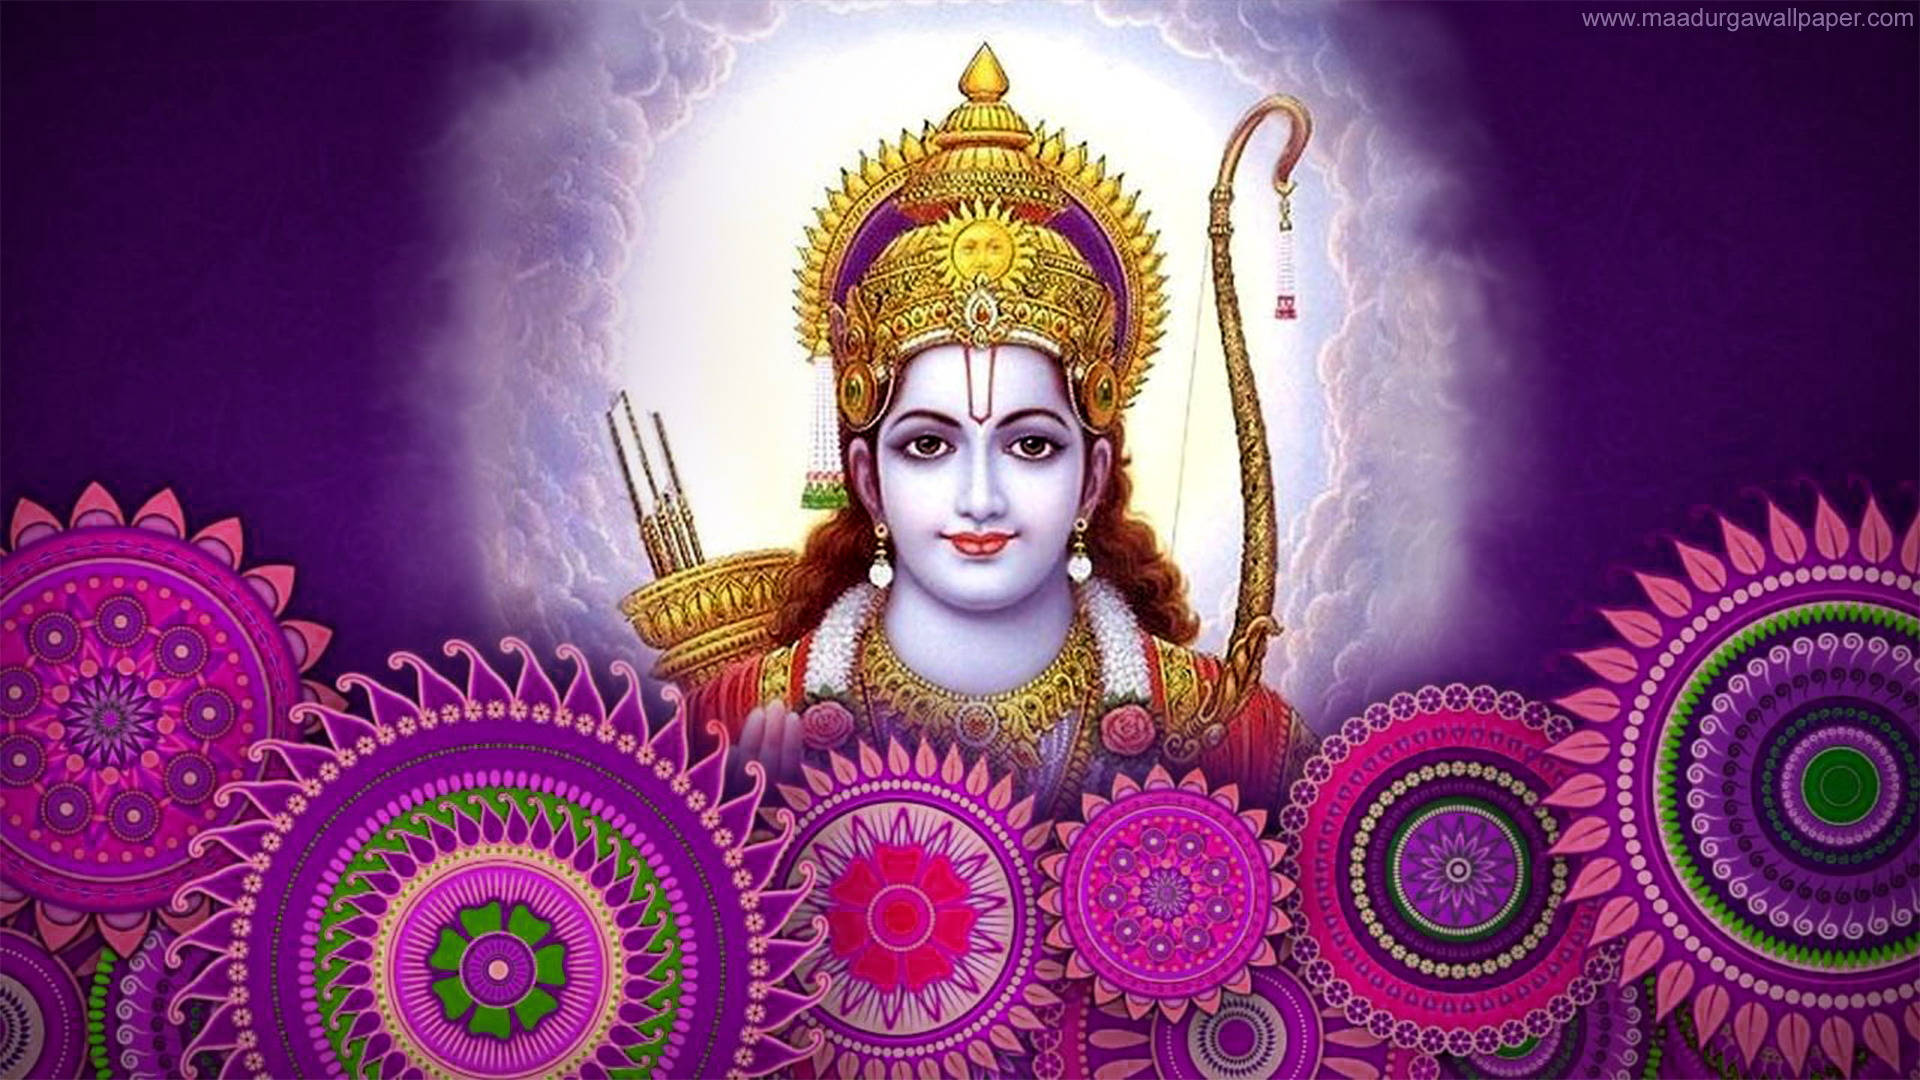 Ram Ji With Purple Mandala Art Background